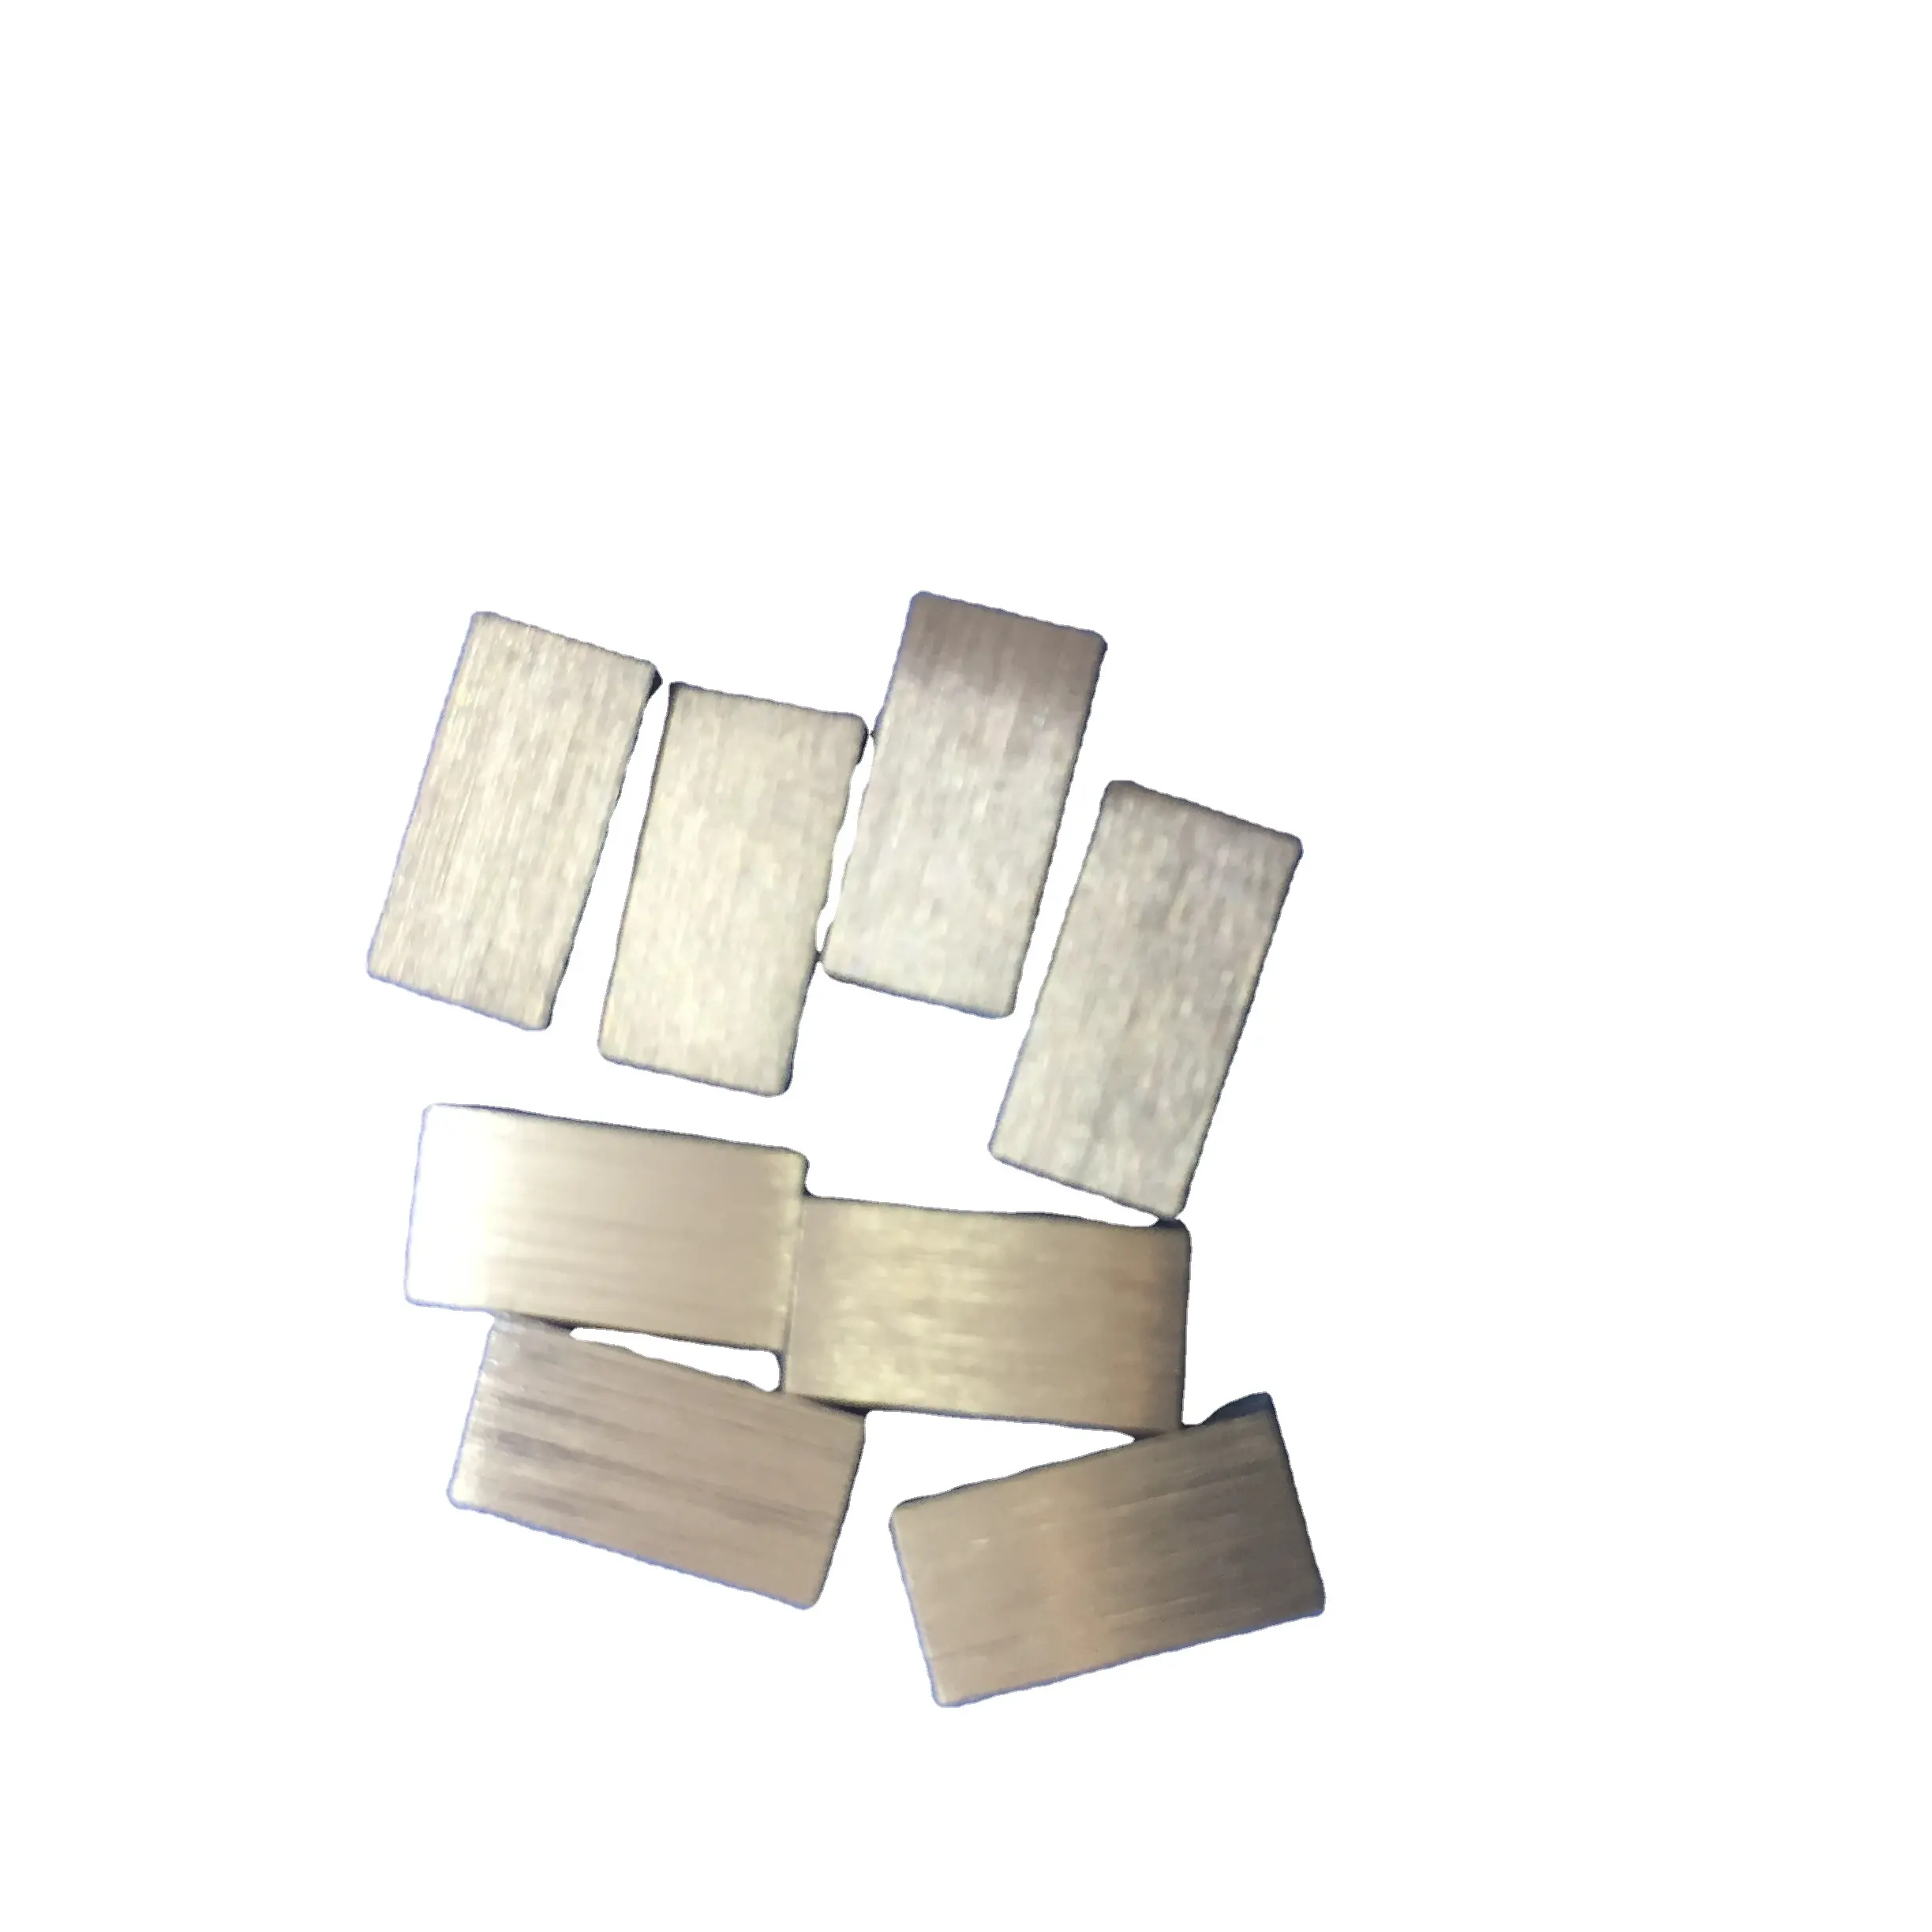 Rare希土類金属99.9% Neodymium Ndインゴットスパッタリングターゲット薄膜コーティング